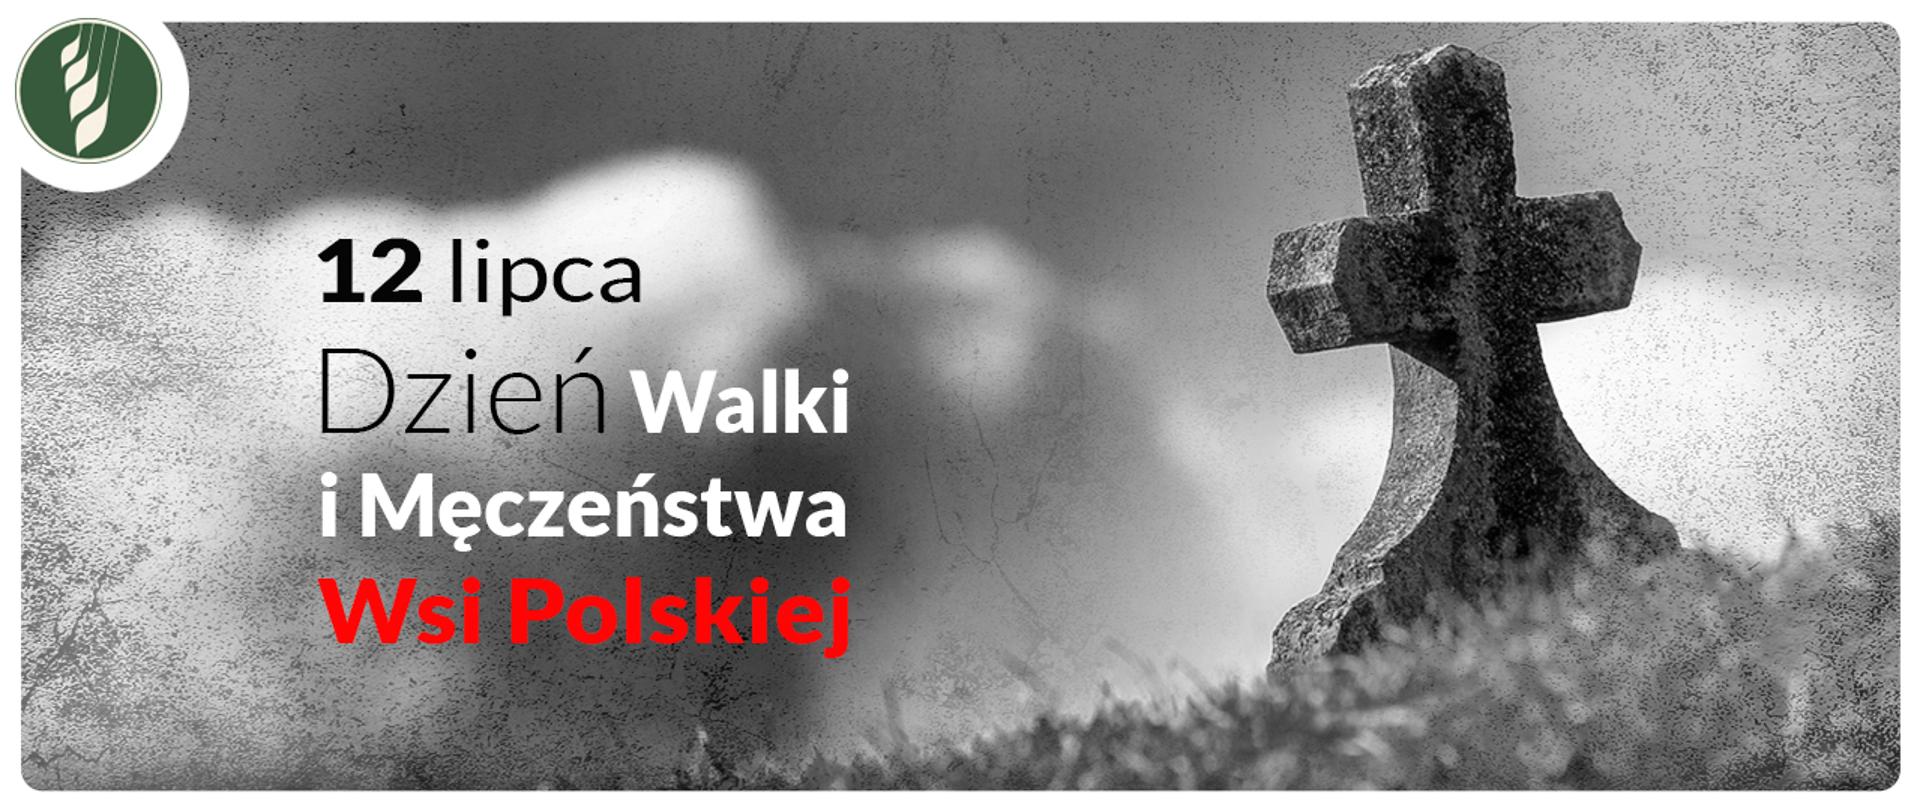 Dzień Męczeństwa Wsi Polskiej